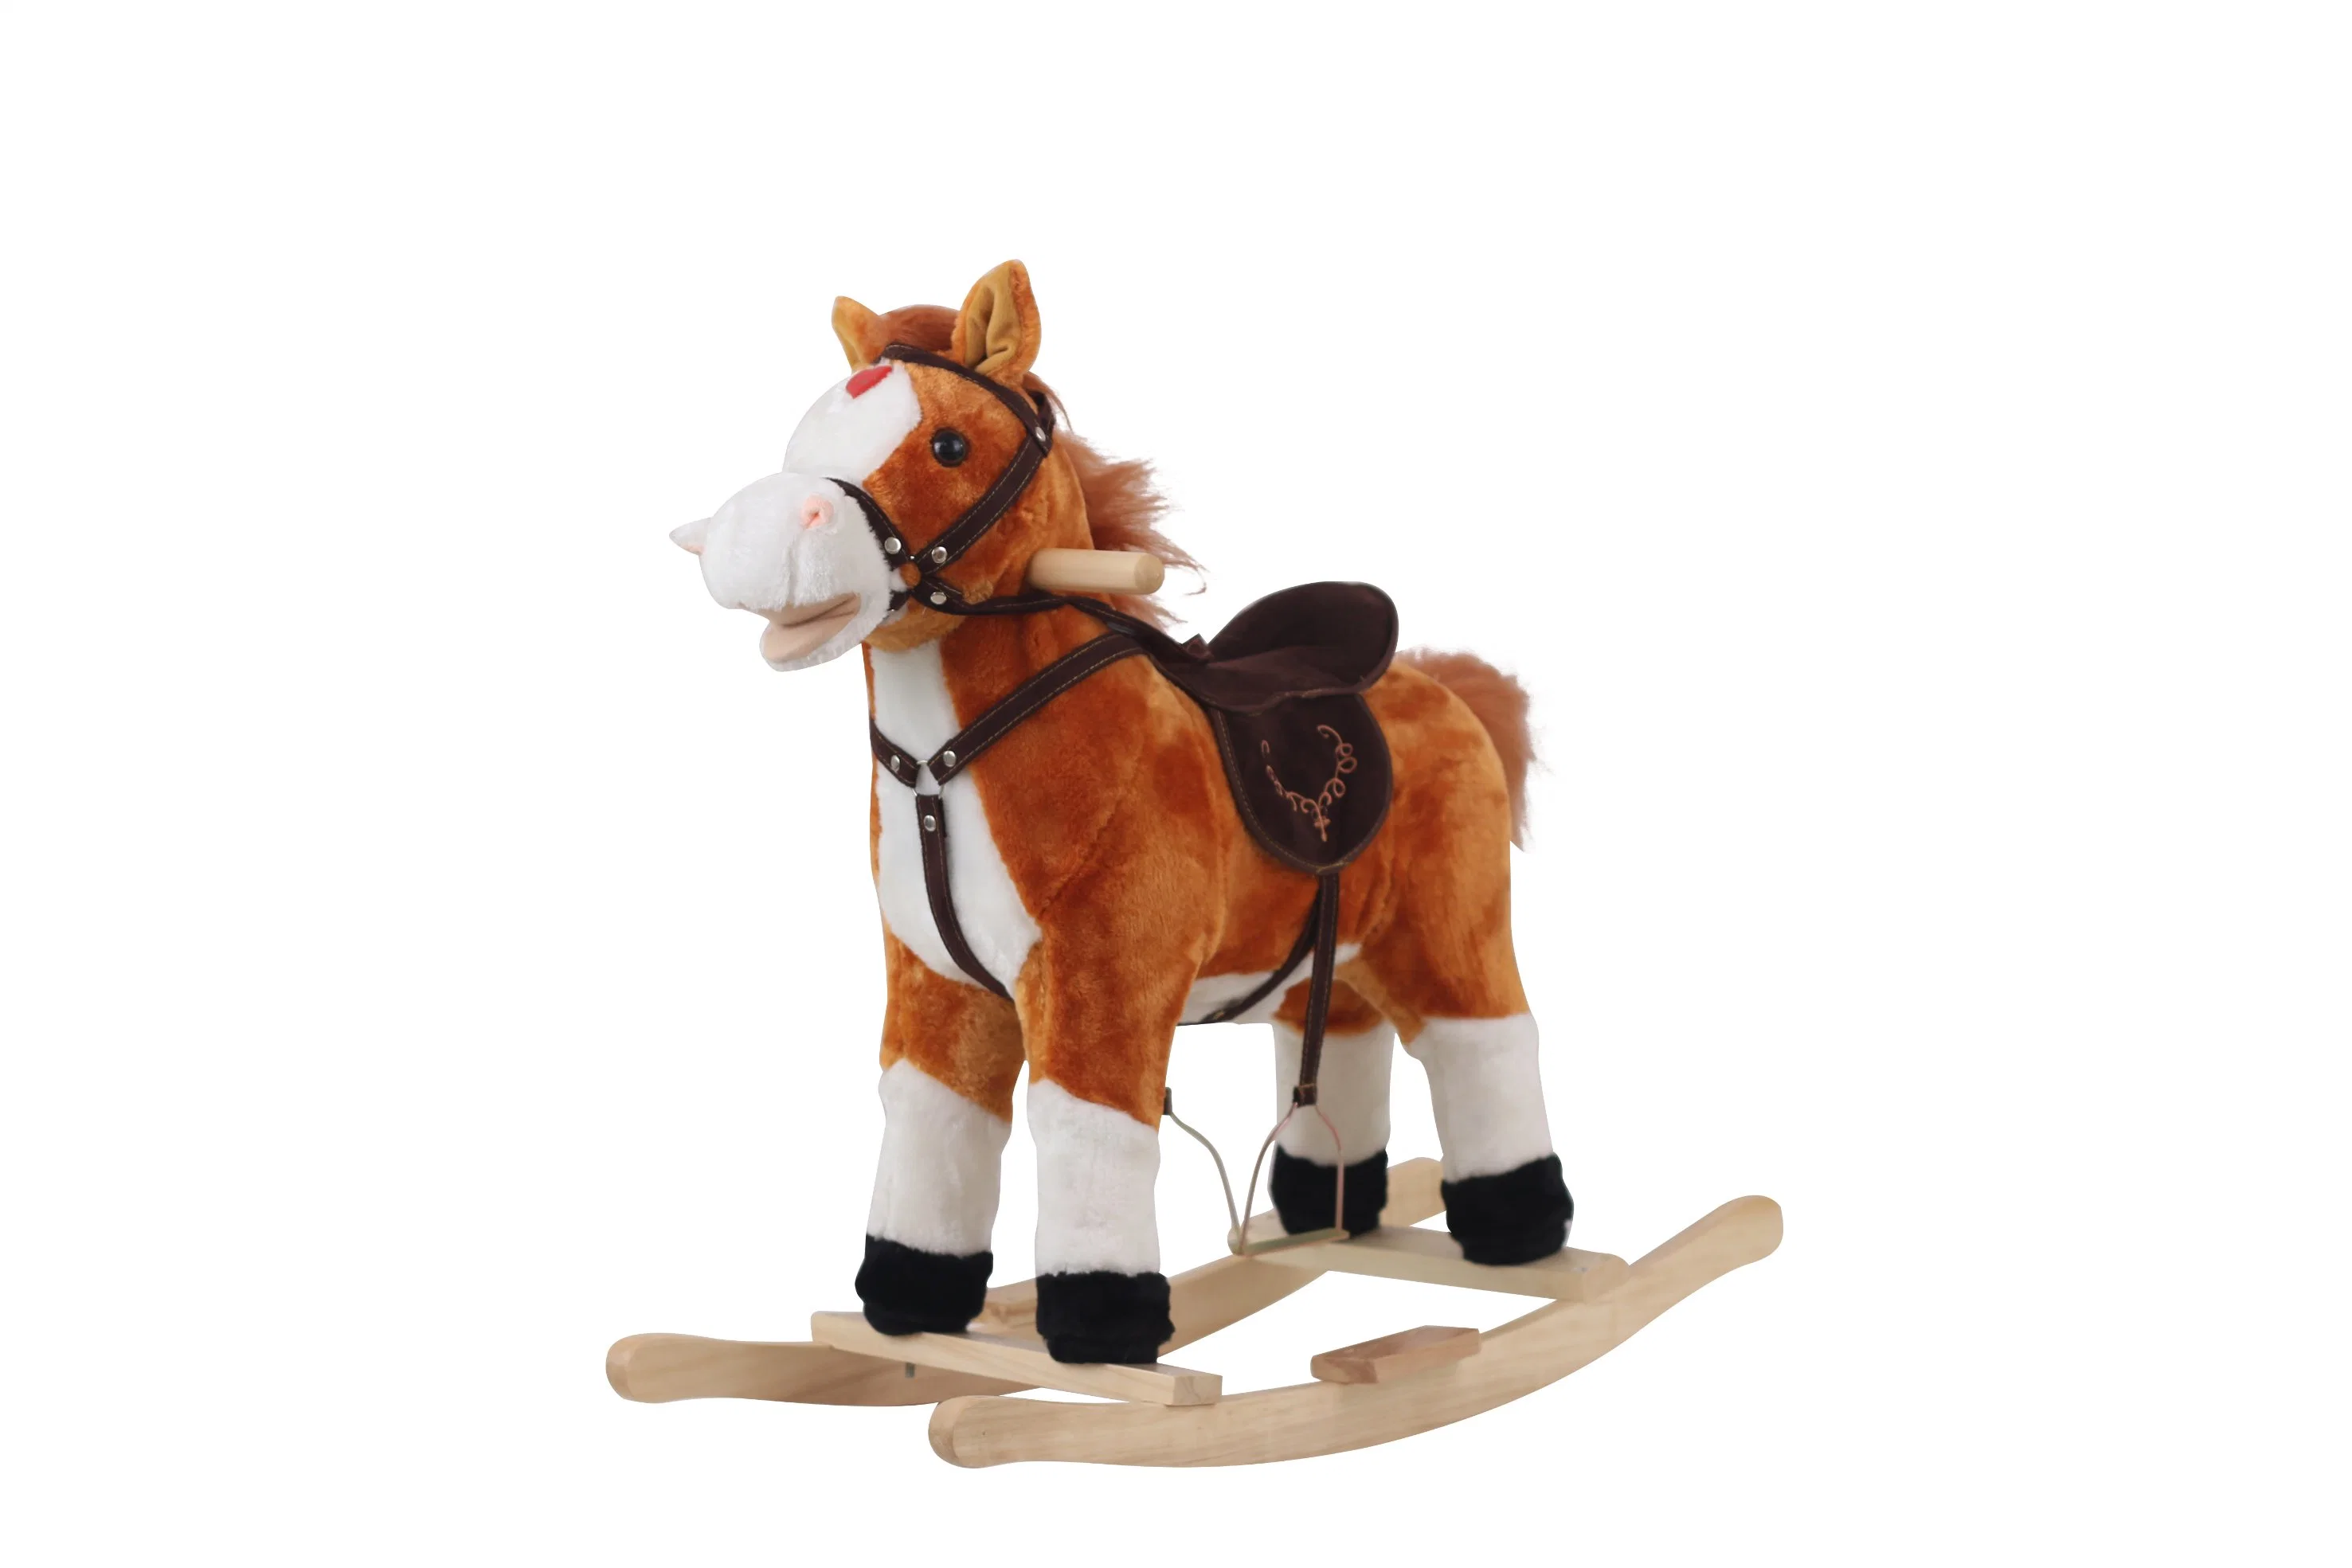 OEM ODM Whosale Kinder Baby Holzritt Plüsch Schaukeln Pferde Spielzeug